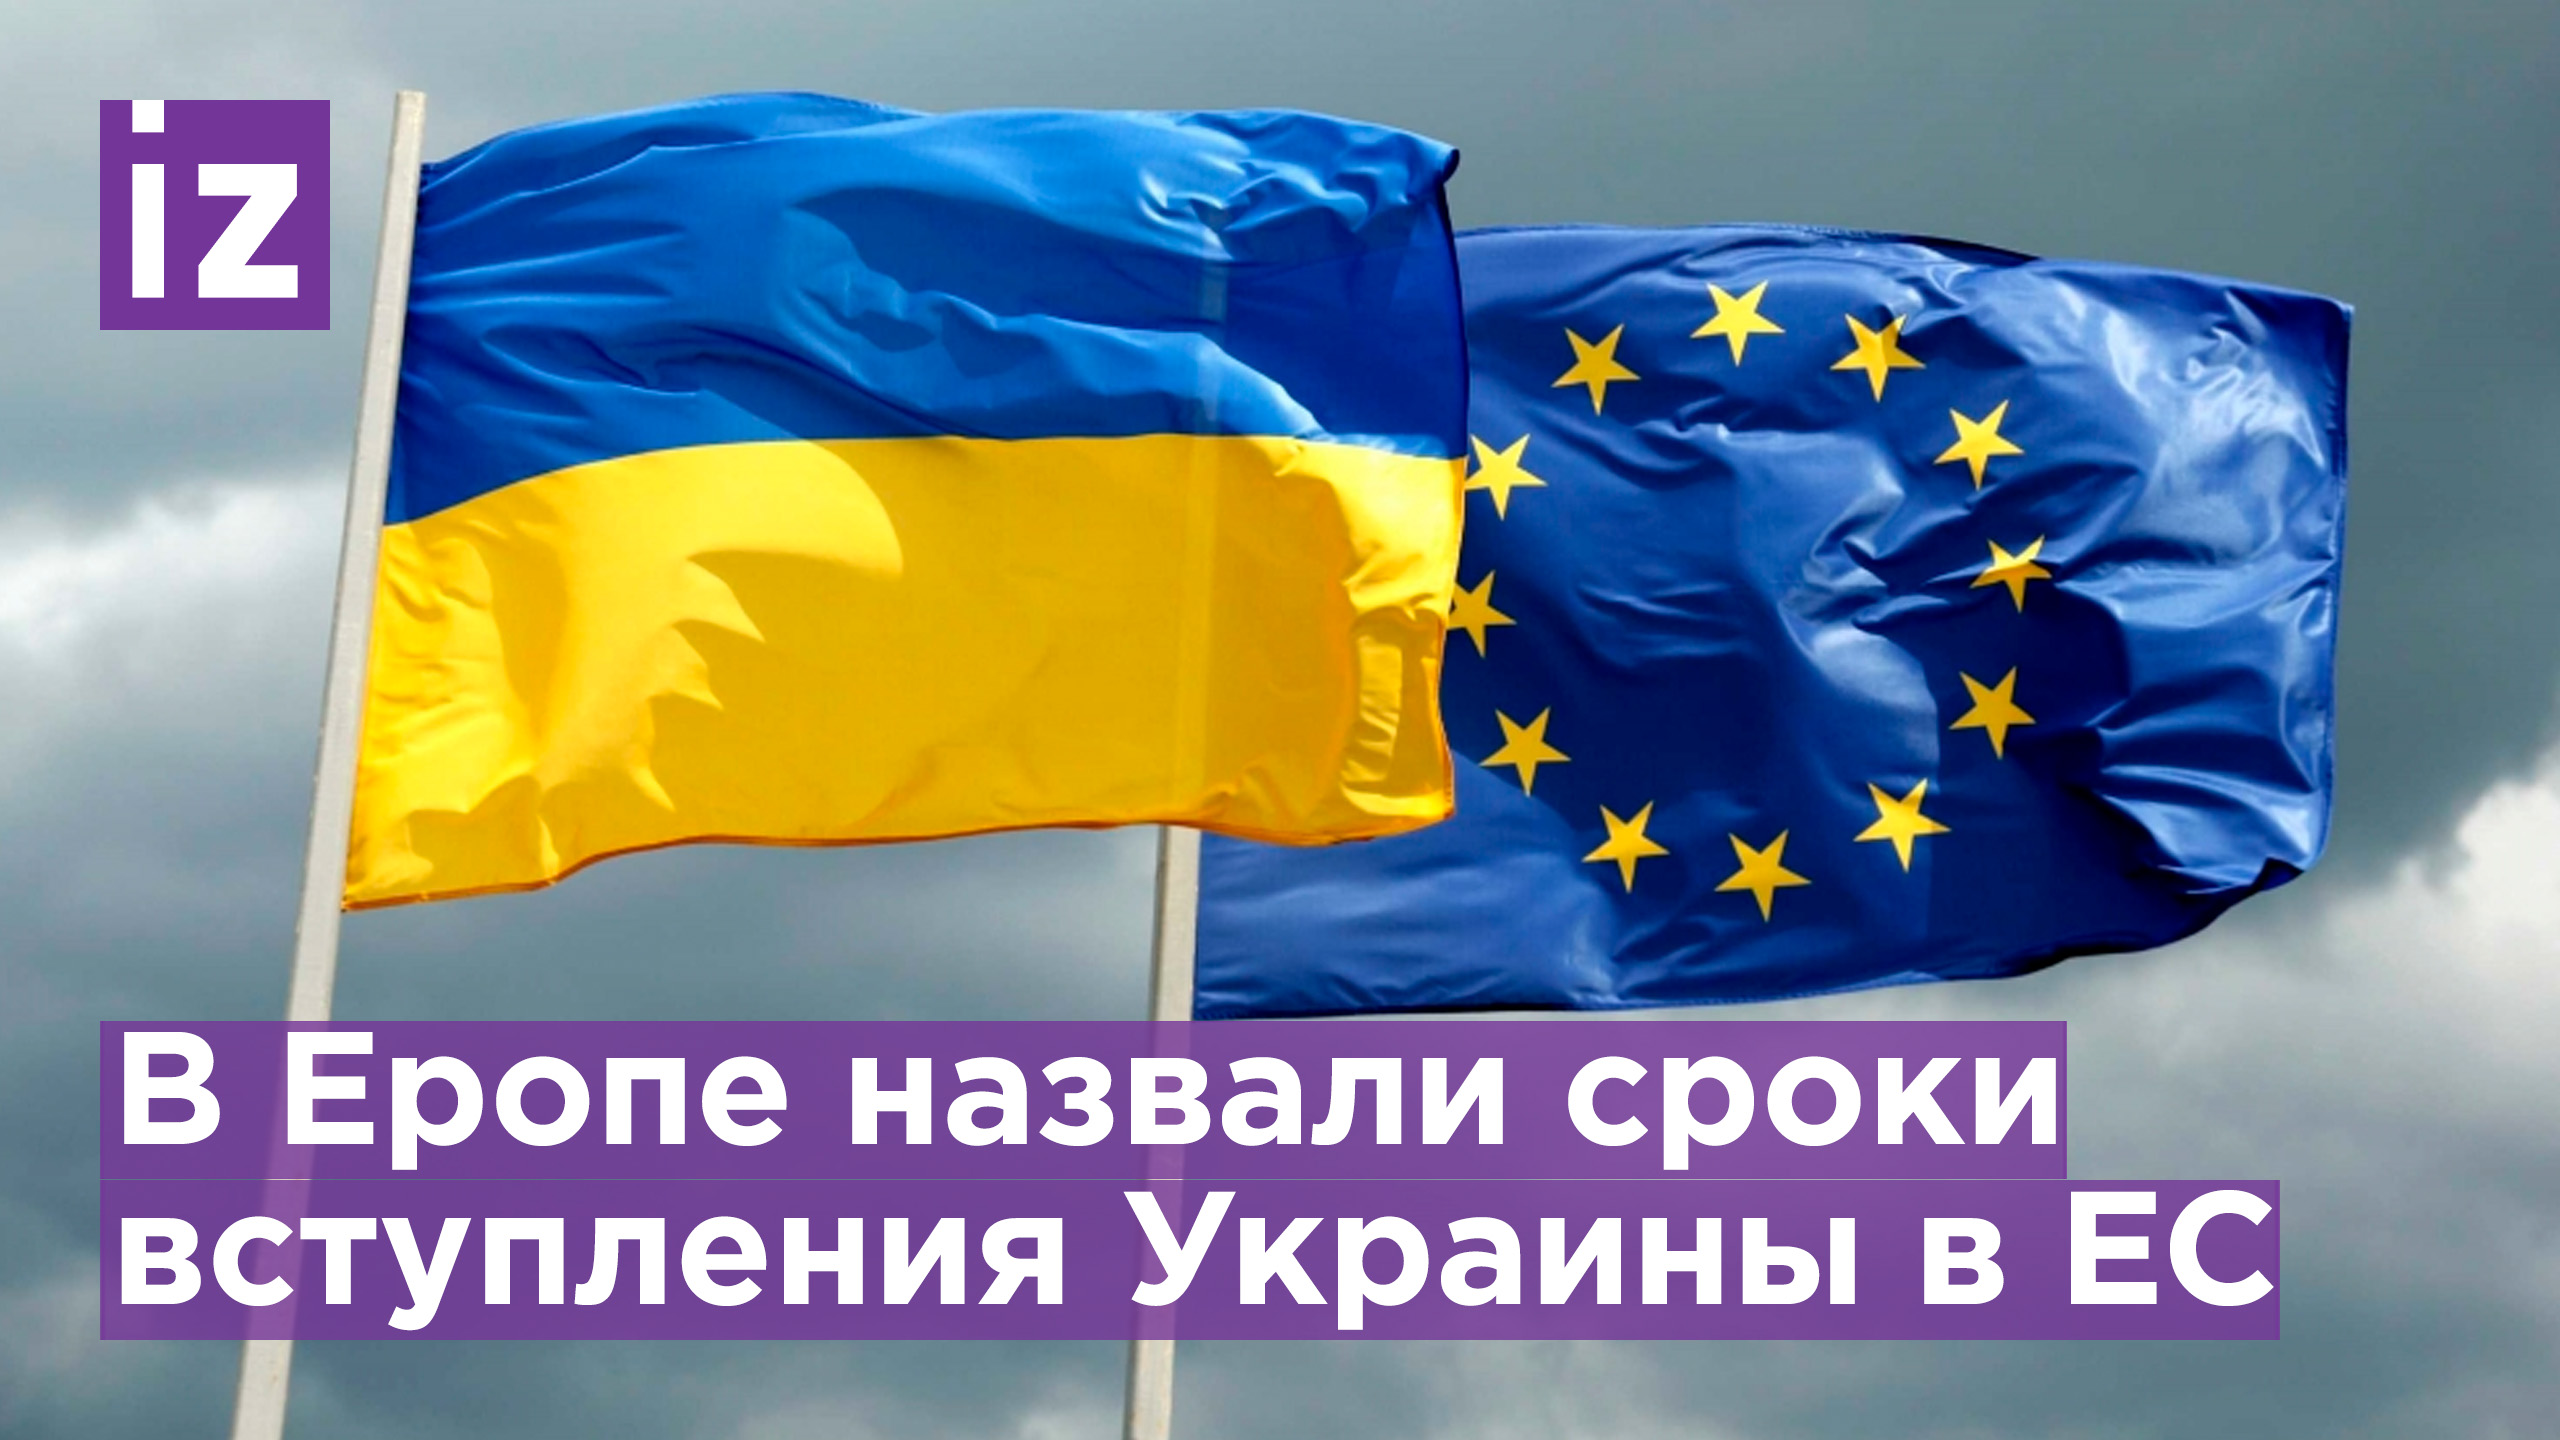 Вступление Украины в ЕС может занять до 20 лет, порядок поменяют? / Известия